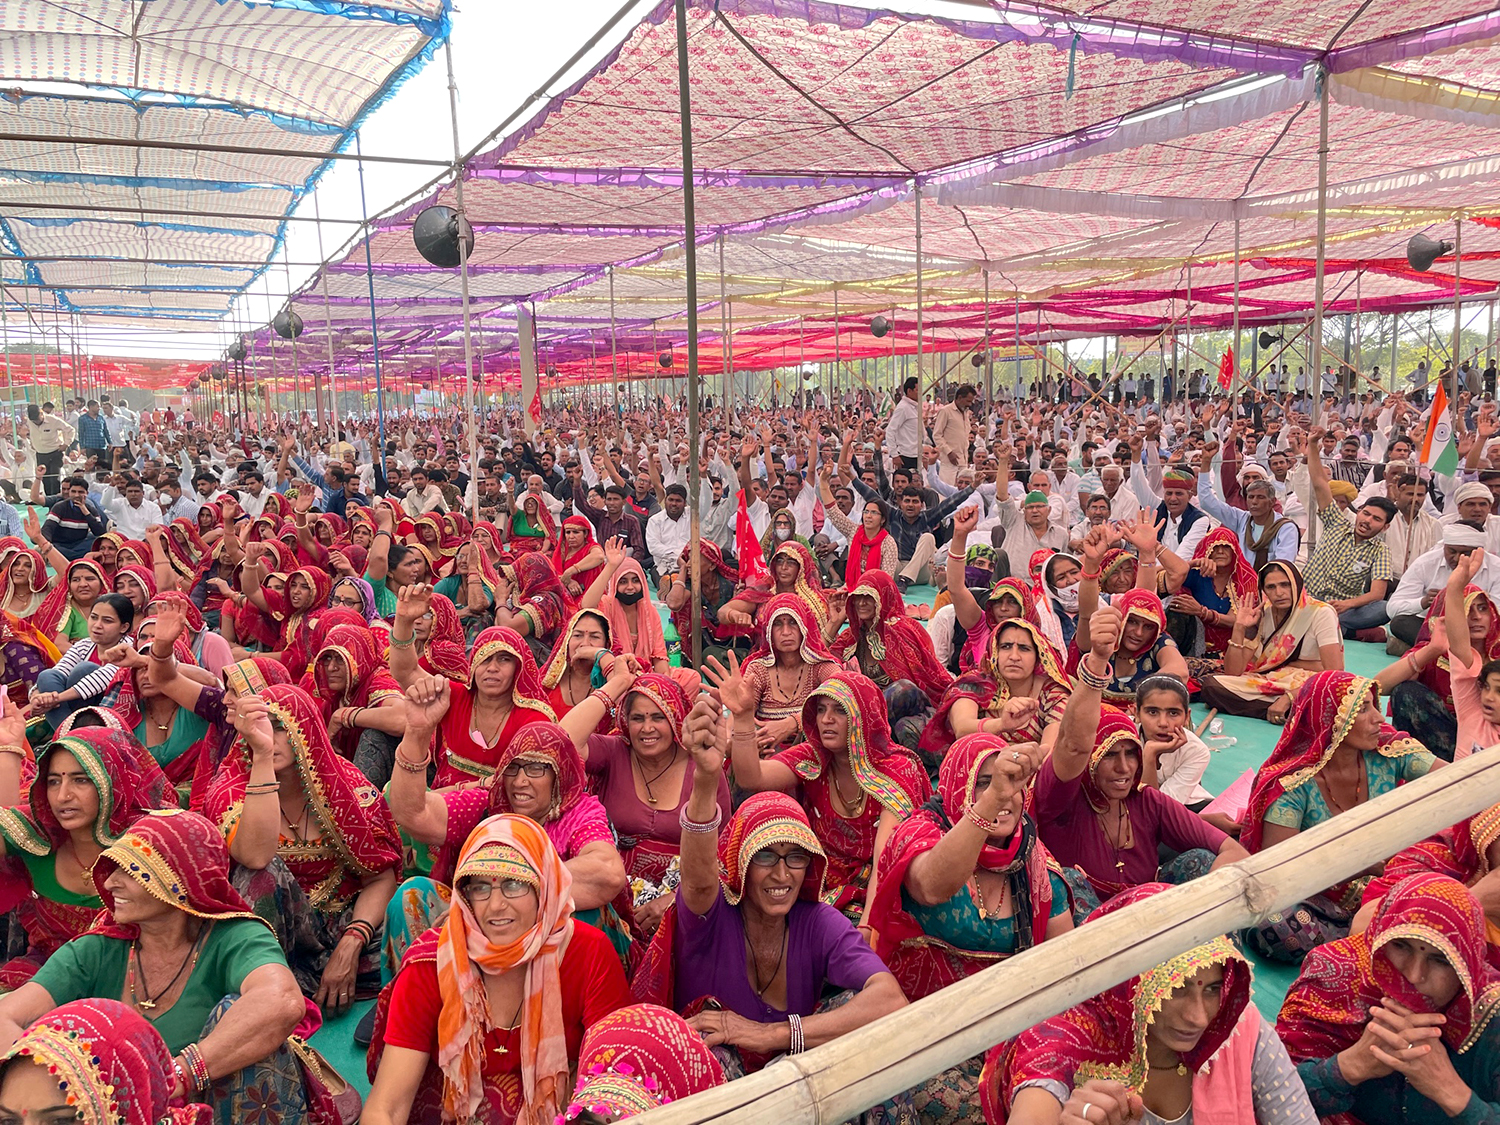 Rakesh Tikait, Yogendra Yadav address thousands gathered at Sikar mahapanchayat in Rajasthan against farm laws